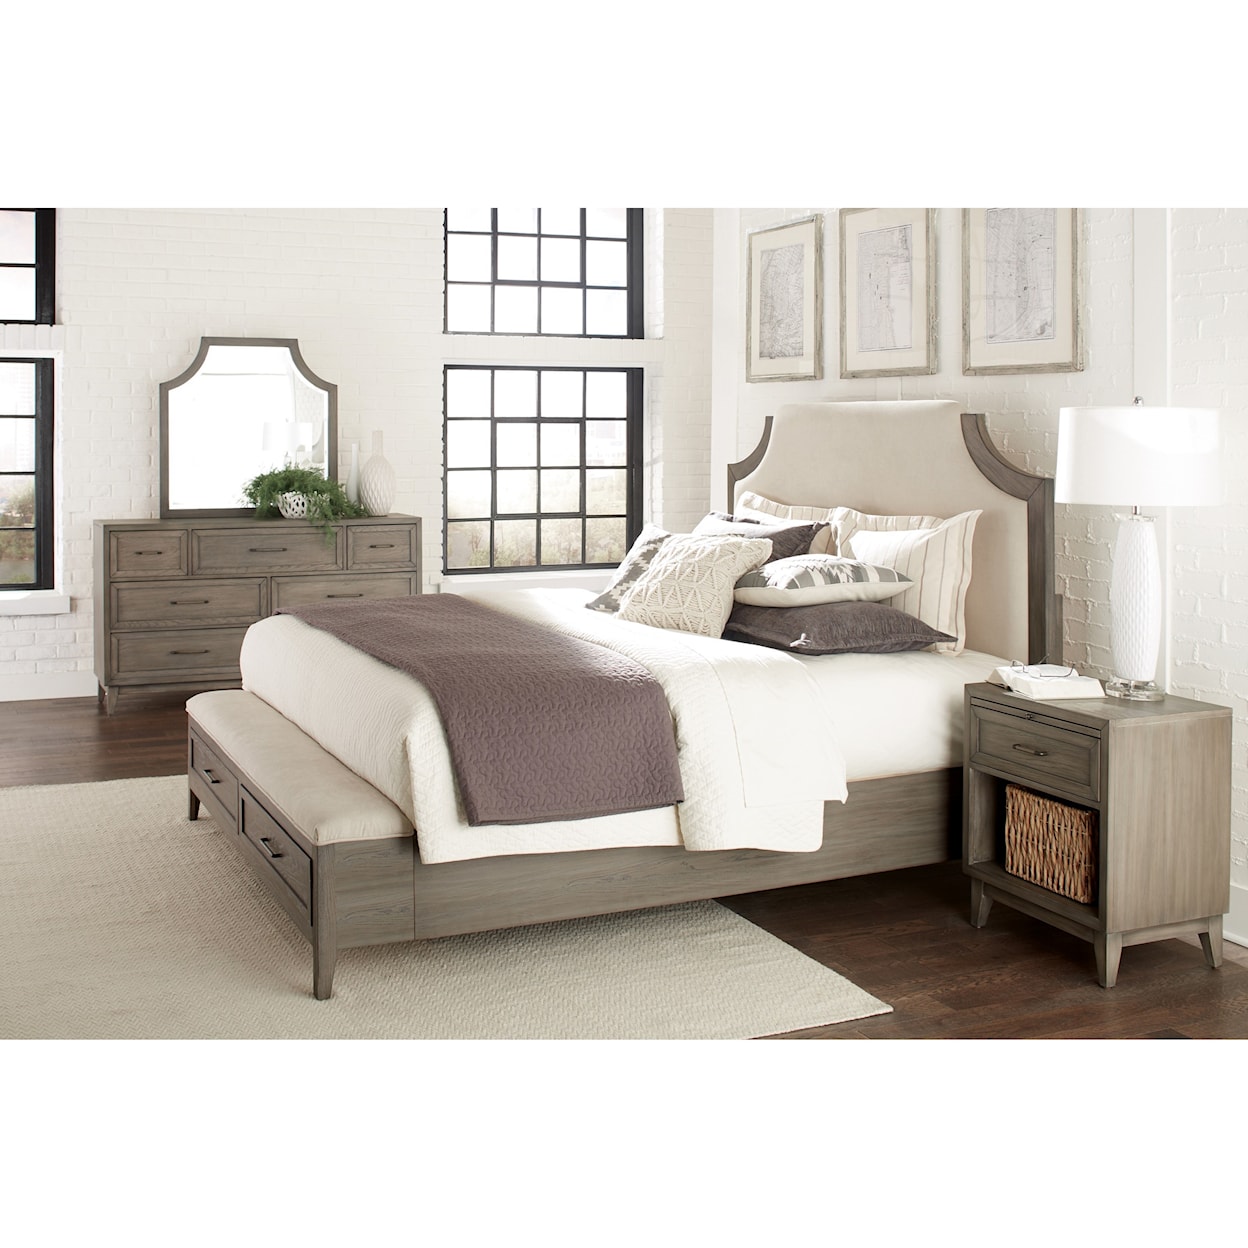 Riverside Furniture Vogue Queen Bedroom Group